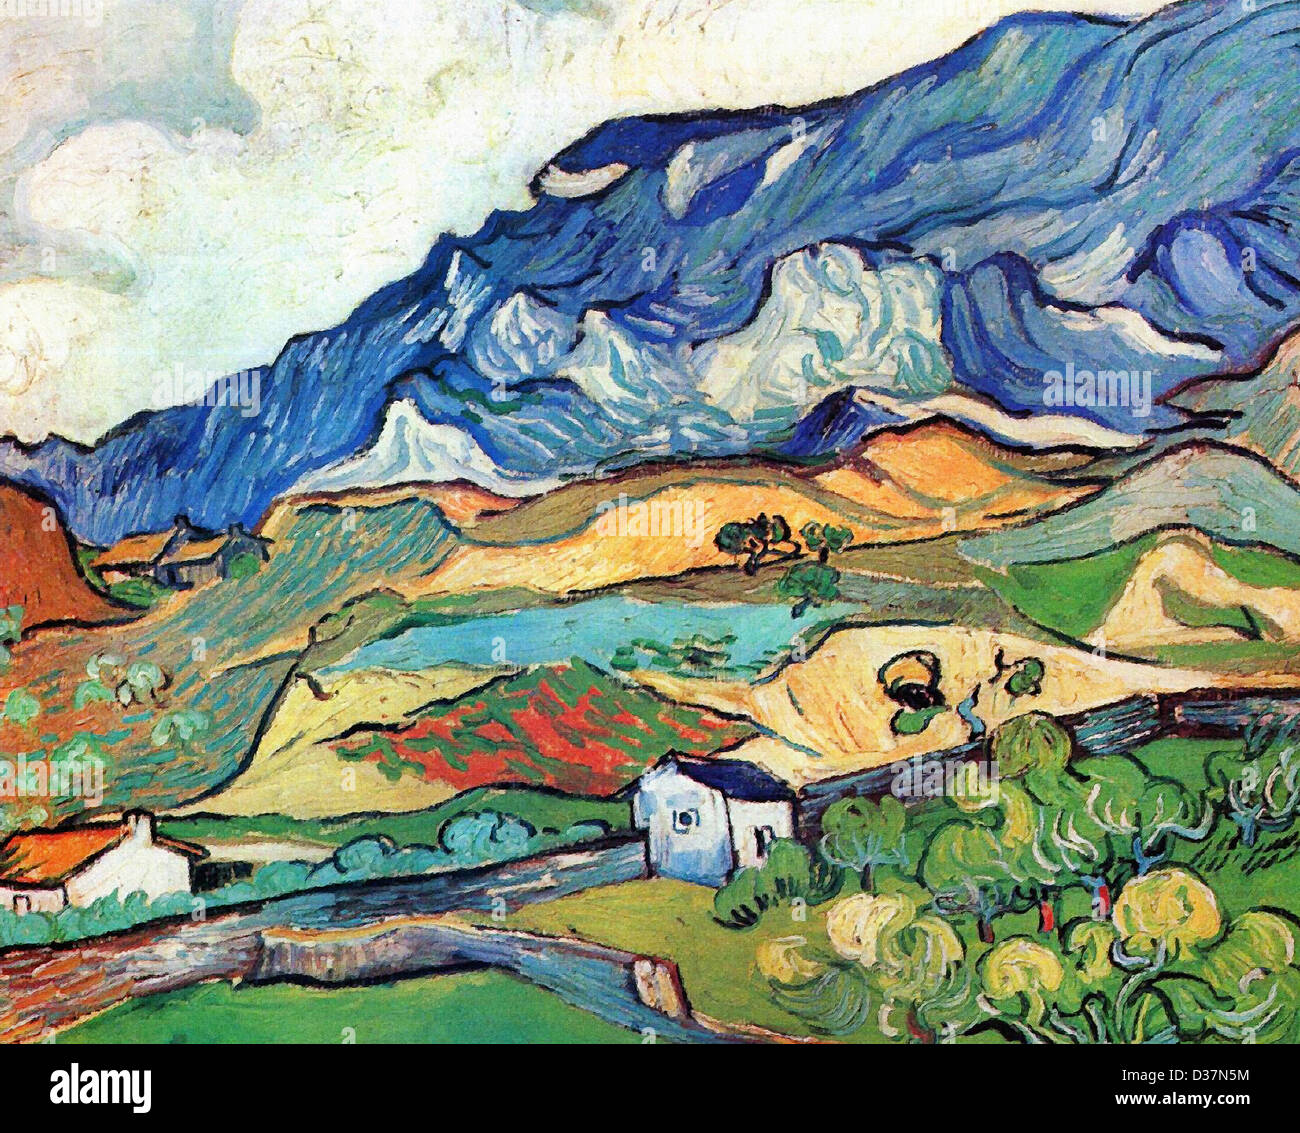 Vincent van Gogh, les Alpilles, paysage de montagne près de South-Reme. 1889. Le postimpressionnisme. Huile sur toile. Banque D'Images